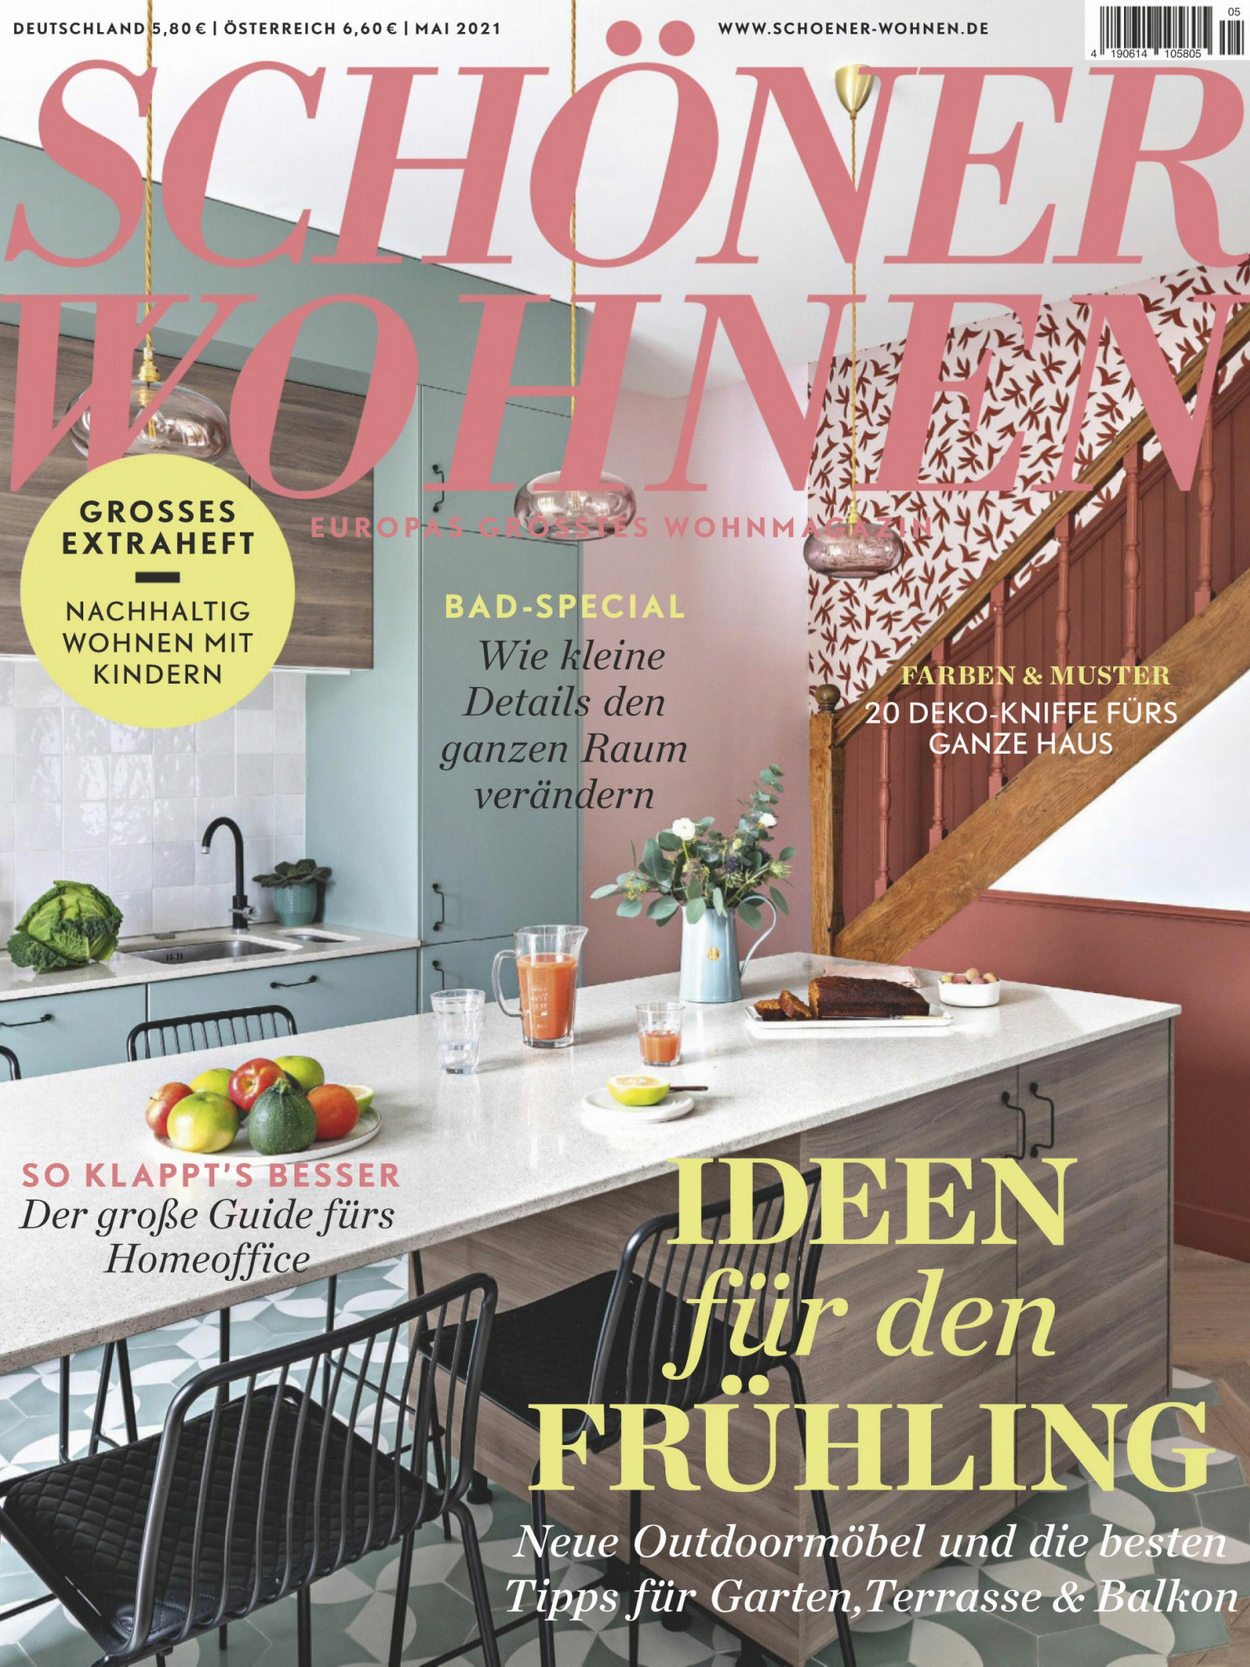 《Schoner Wohnen》德国版时尚家居杂志2021年05月号